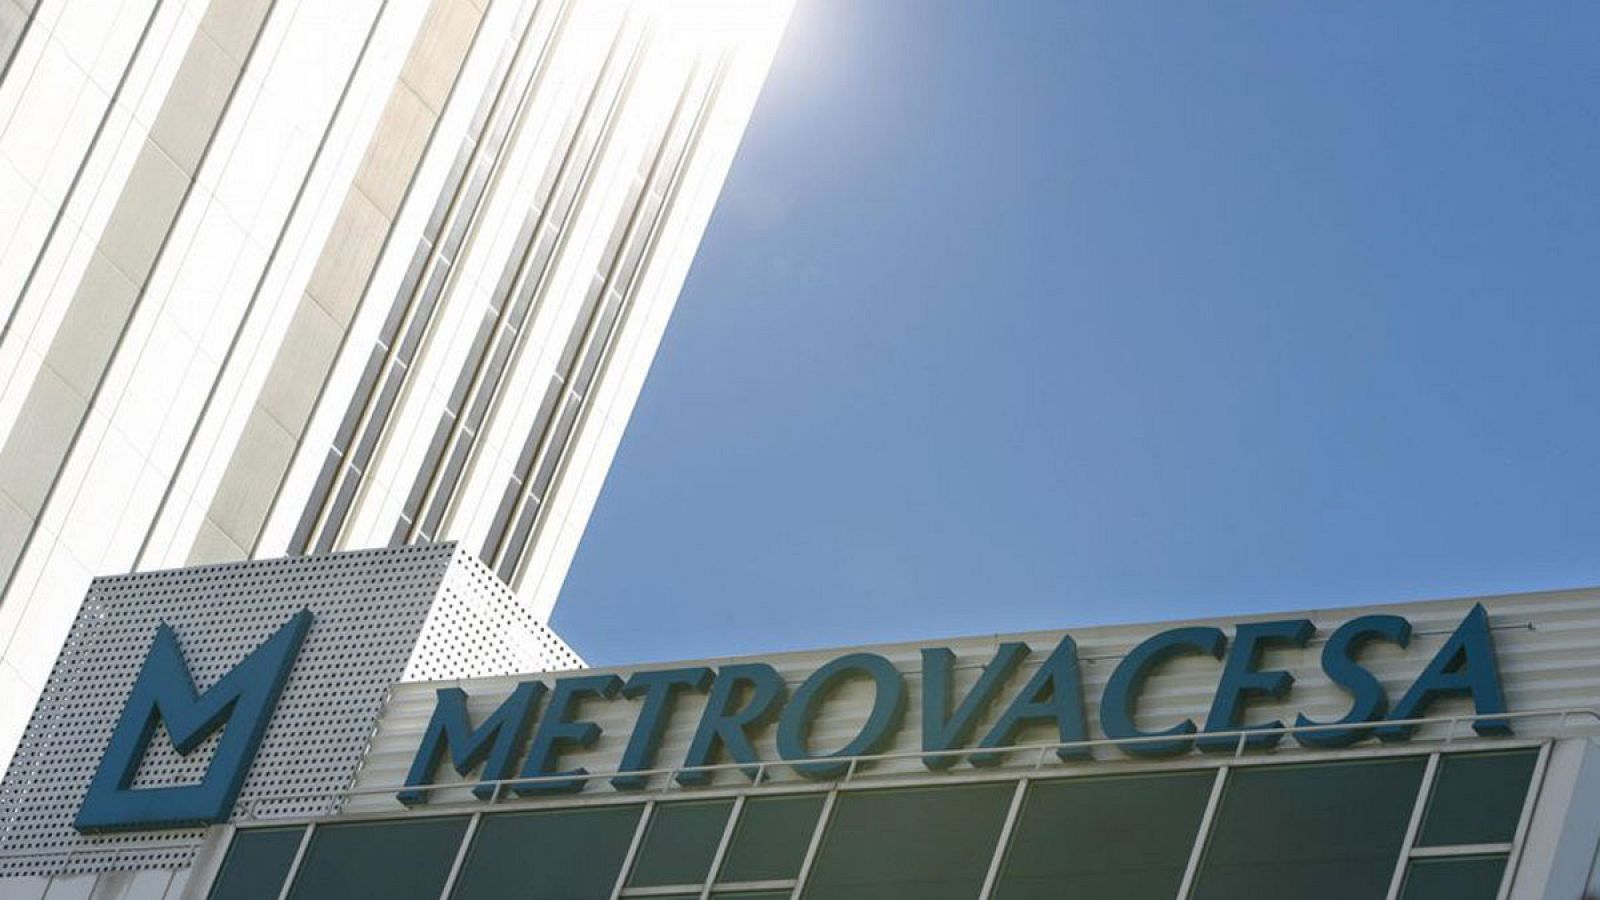 Detalle de la sede de la promotora Metrovacesa en Madrid